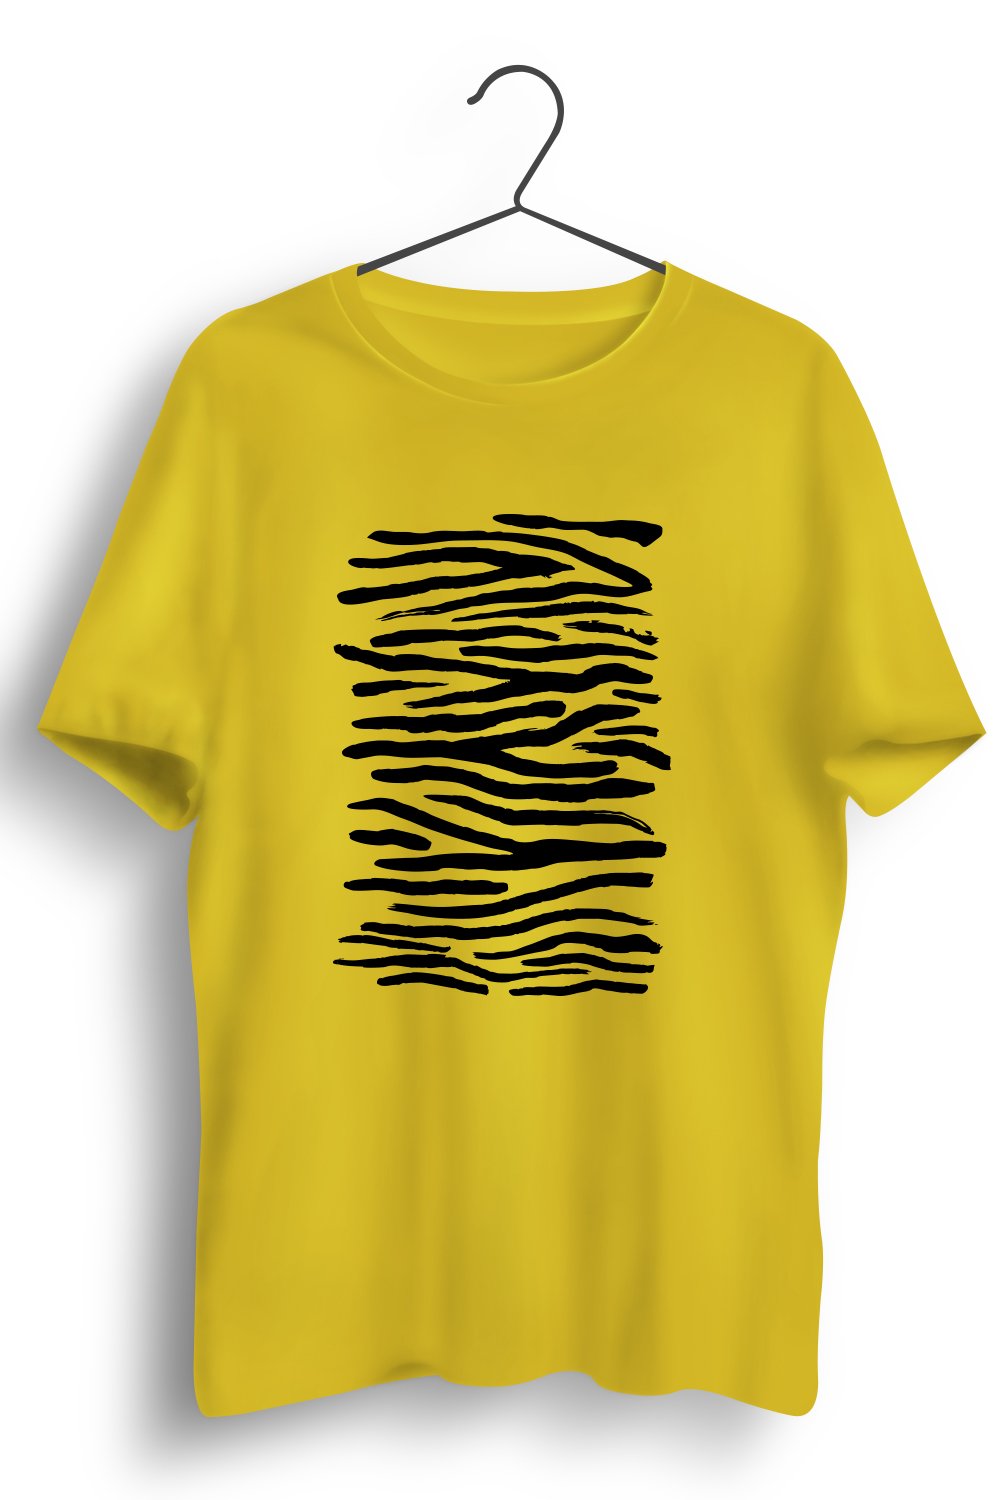 Tiger Stripes Graphic Printed Yellow Tshirt